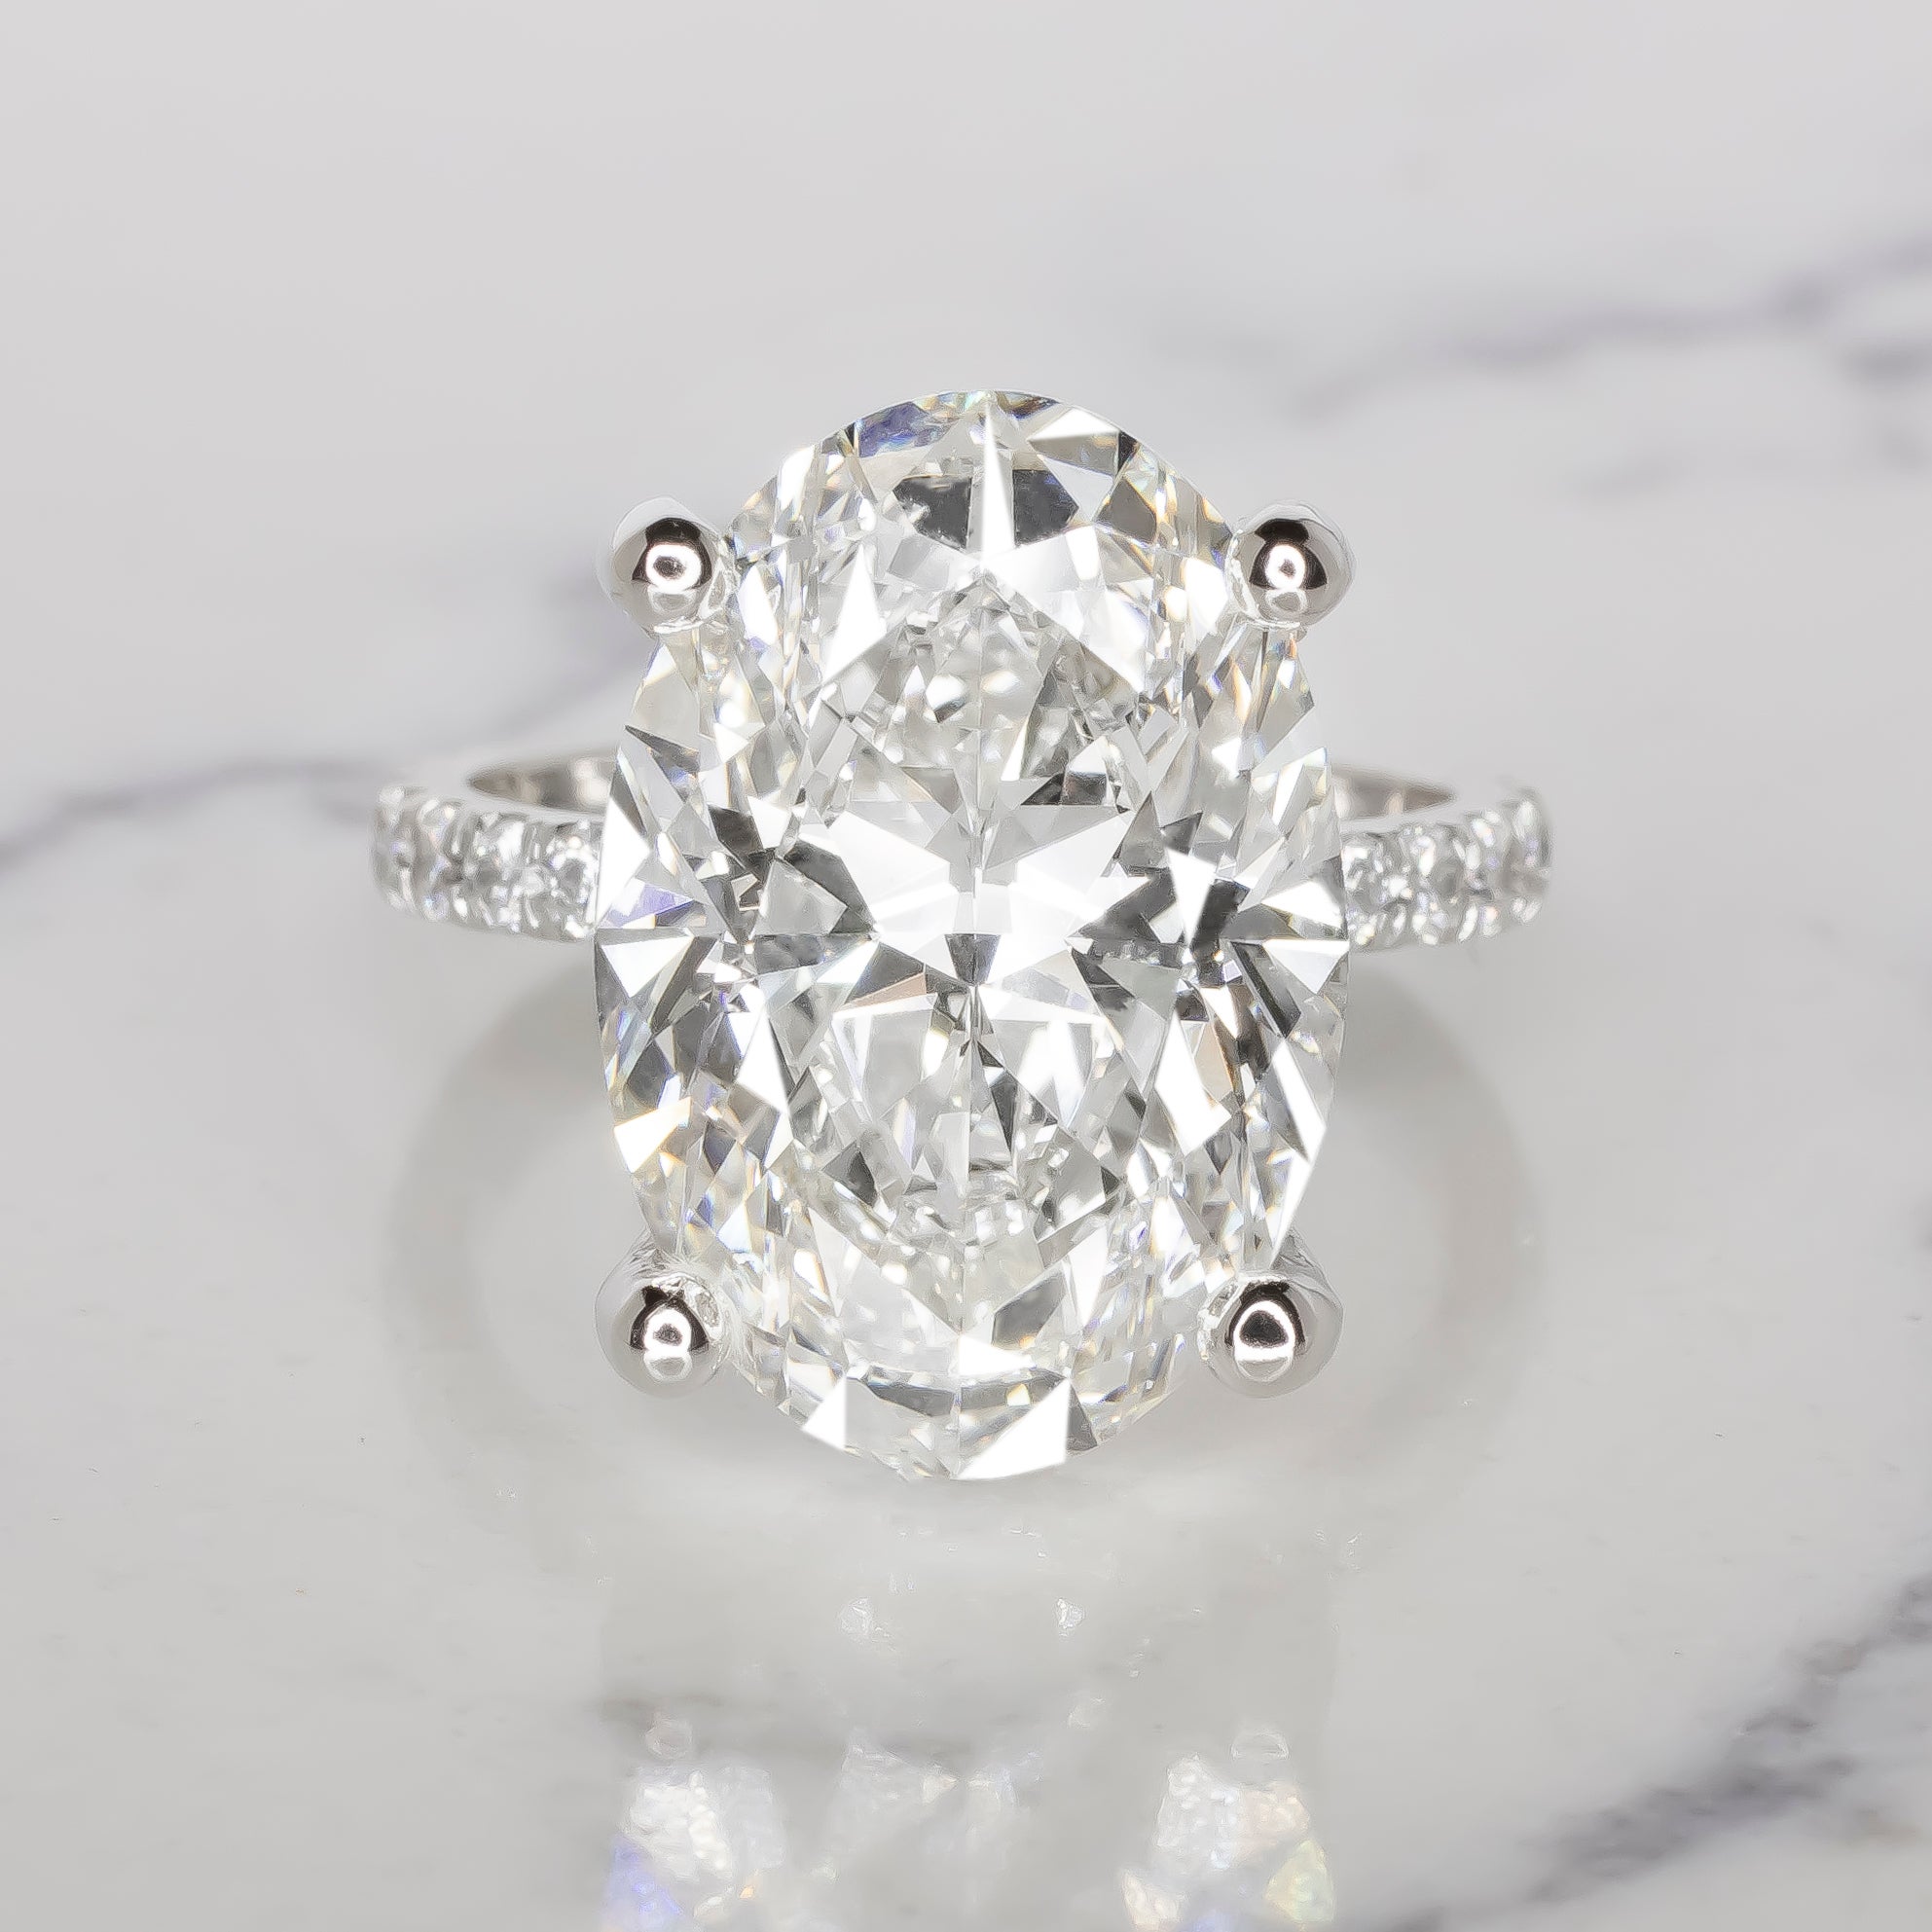 Antinori di Sanpietro ROMA propose une bague en diamant ovale finement taillé de qualité supérieure.
Ce diamant ovale de 12 carats certifié GIA de couleur D et de pureté interne irréprochable est serti dans une bague en platine Antinori di Sanpietro